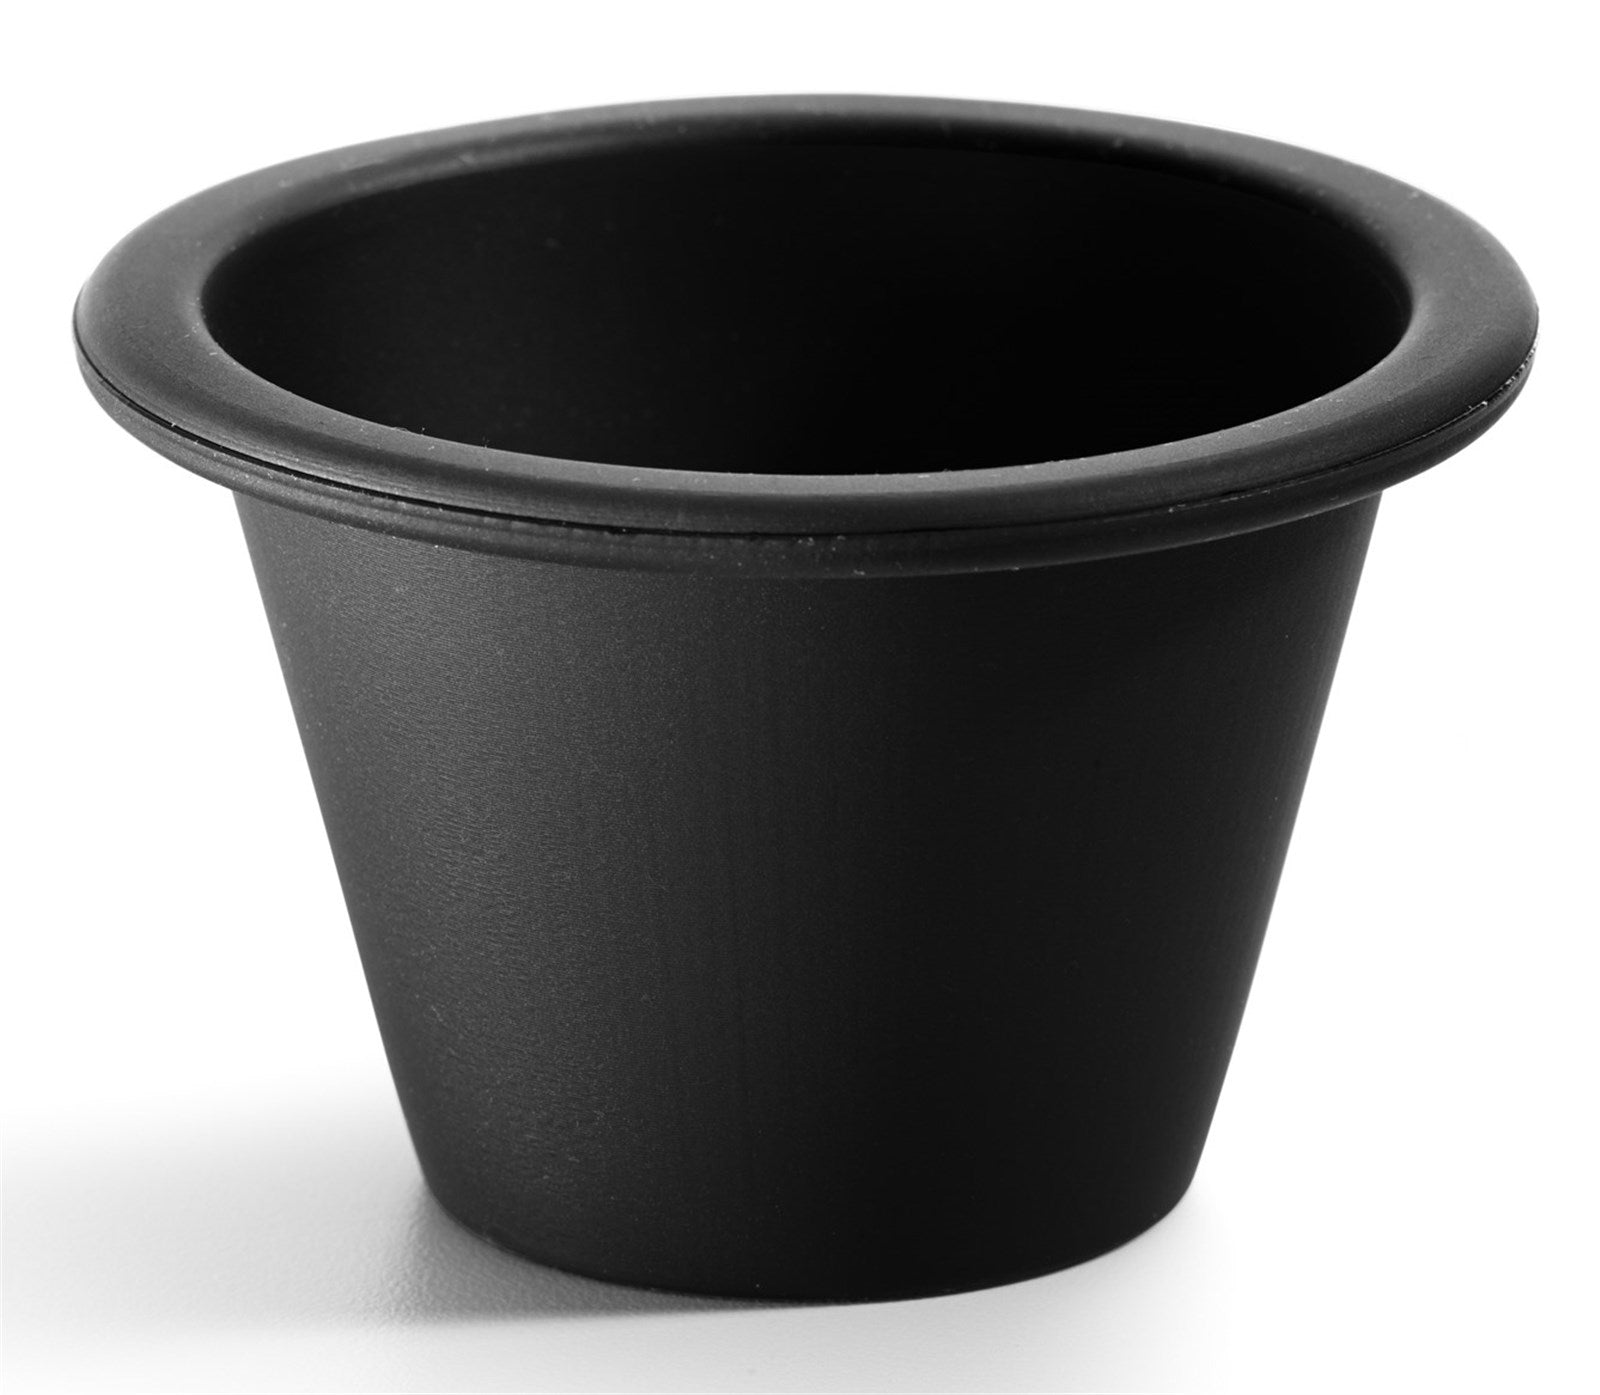 Backform 6er Set Muffin schwarz Ø7.5x6cm in Schwarz präsentiert im Onlineshop von KAQTU Design AG. Backen ist von Lékué